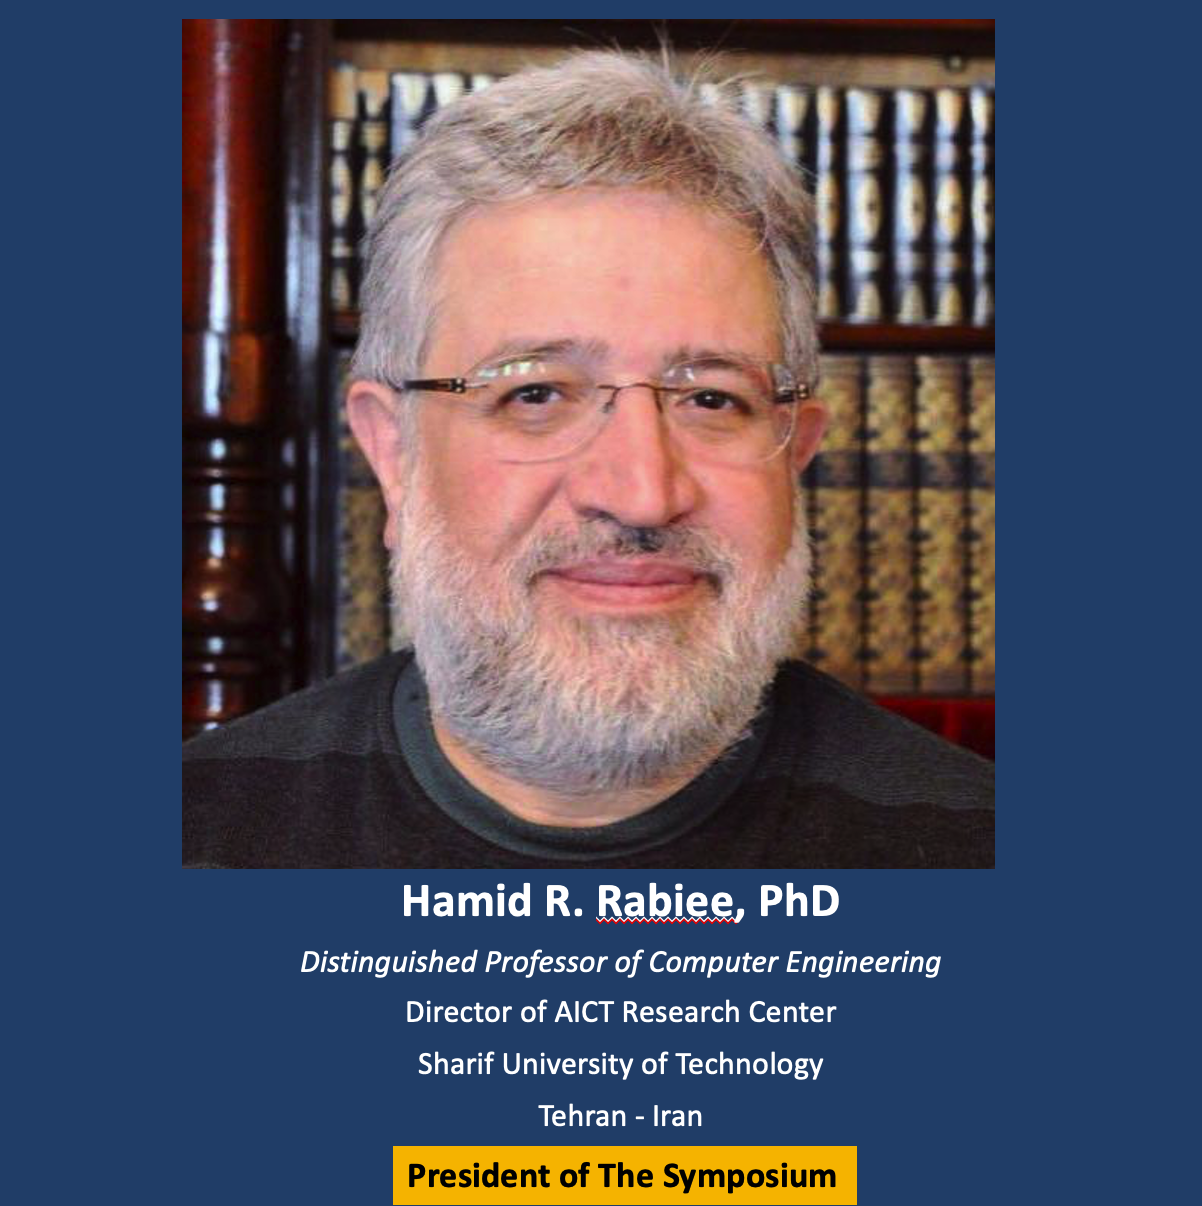 Hamid R. Rabiee